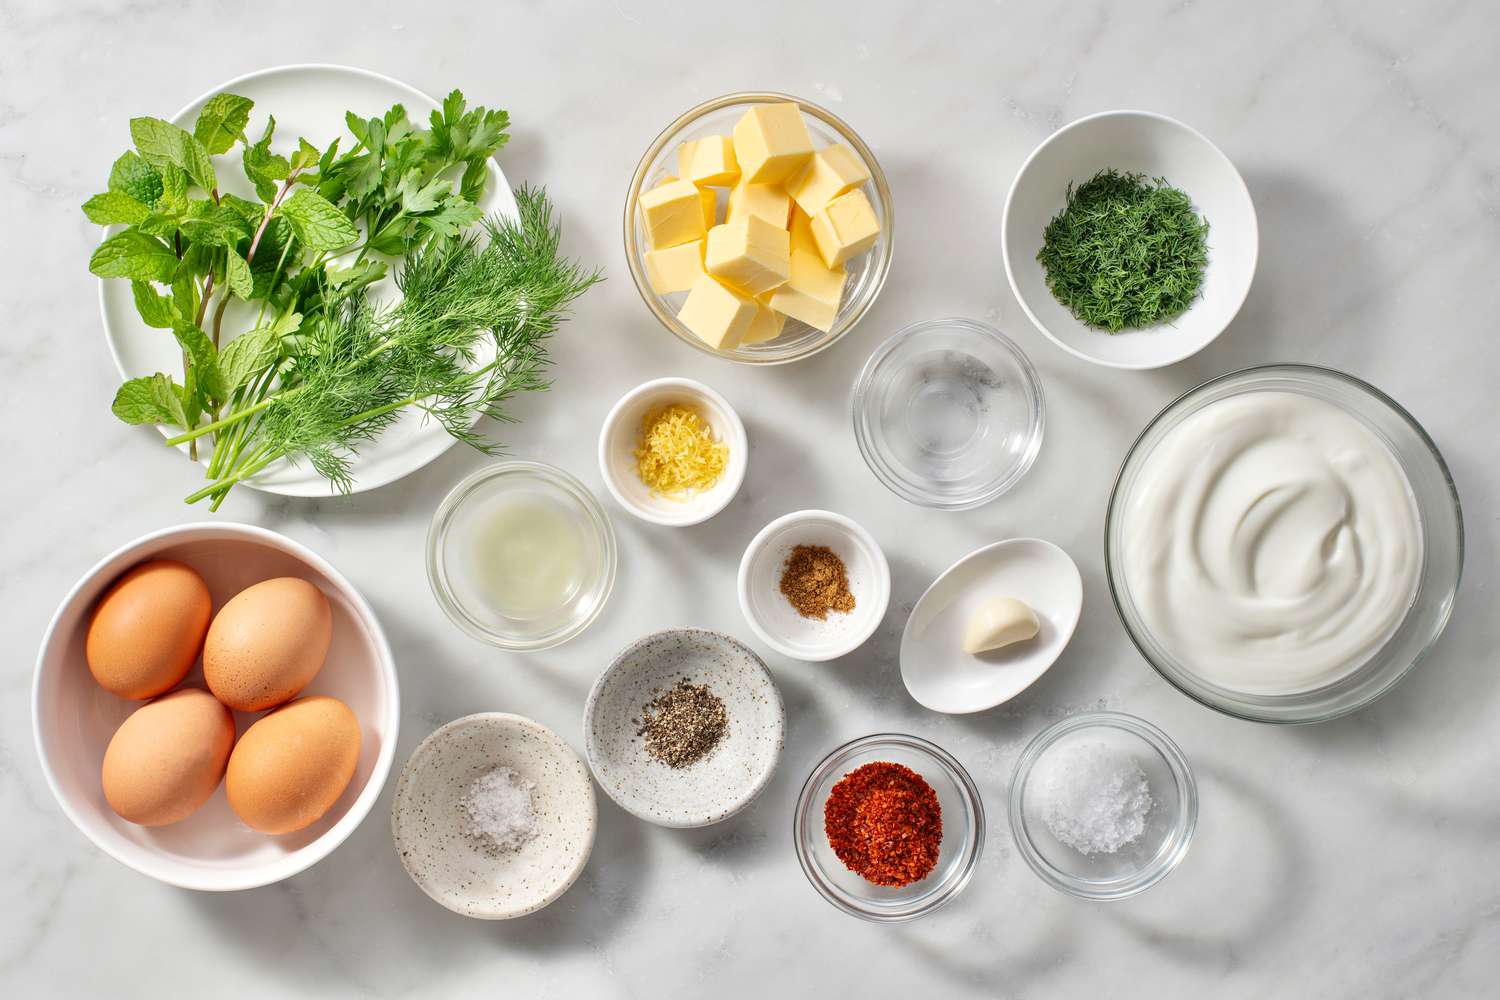 Ingredients to make Turkish eggs